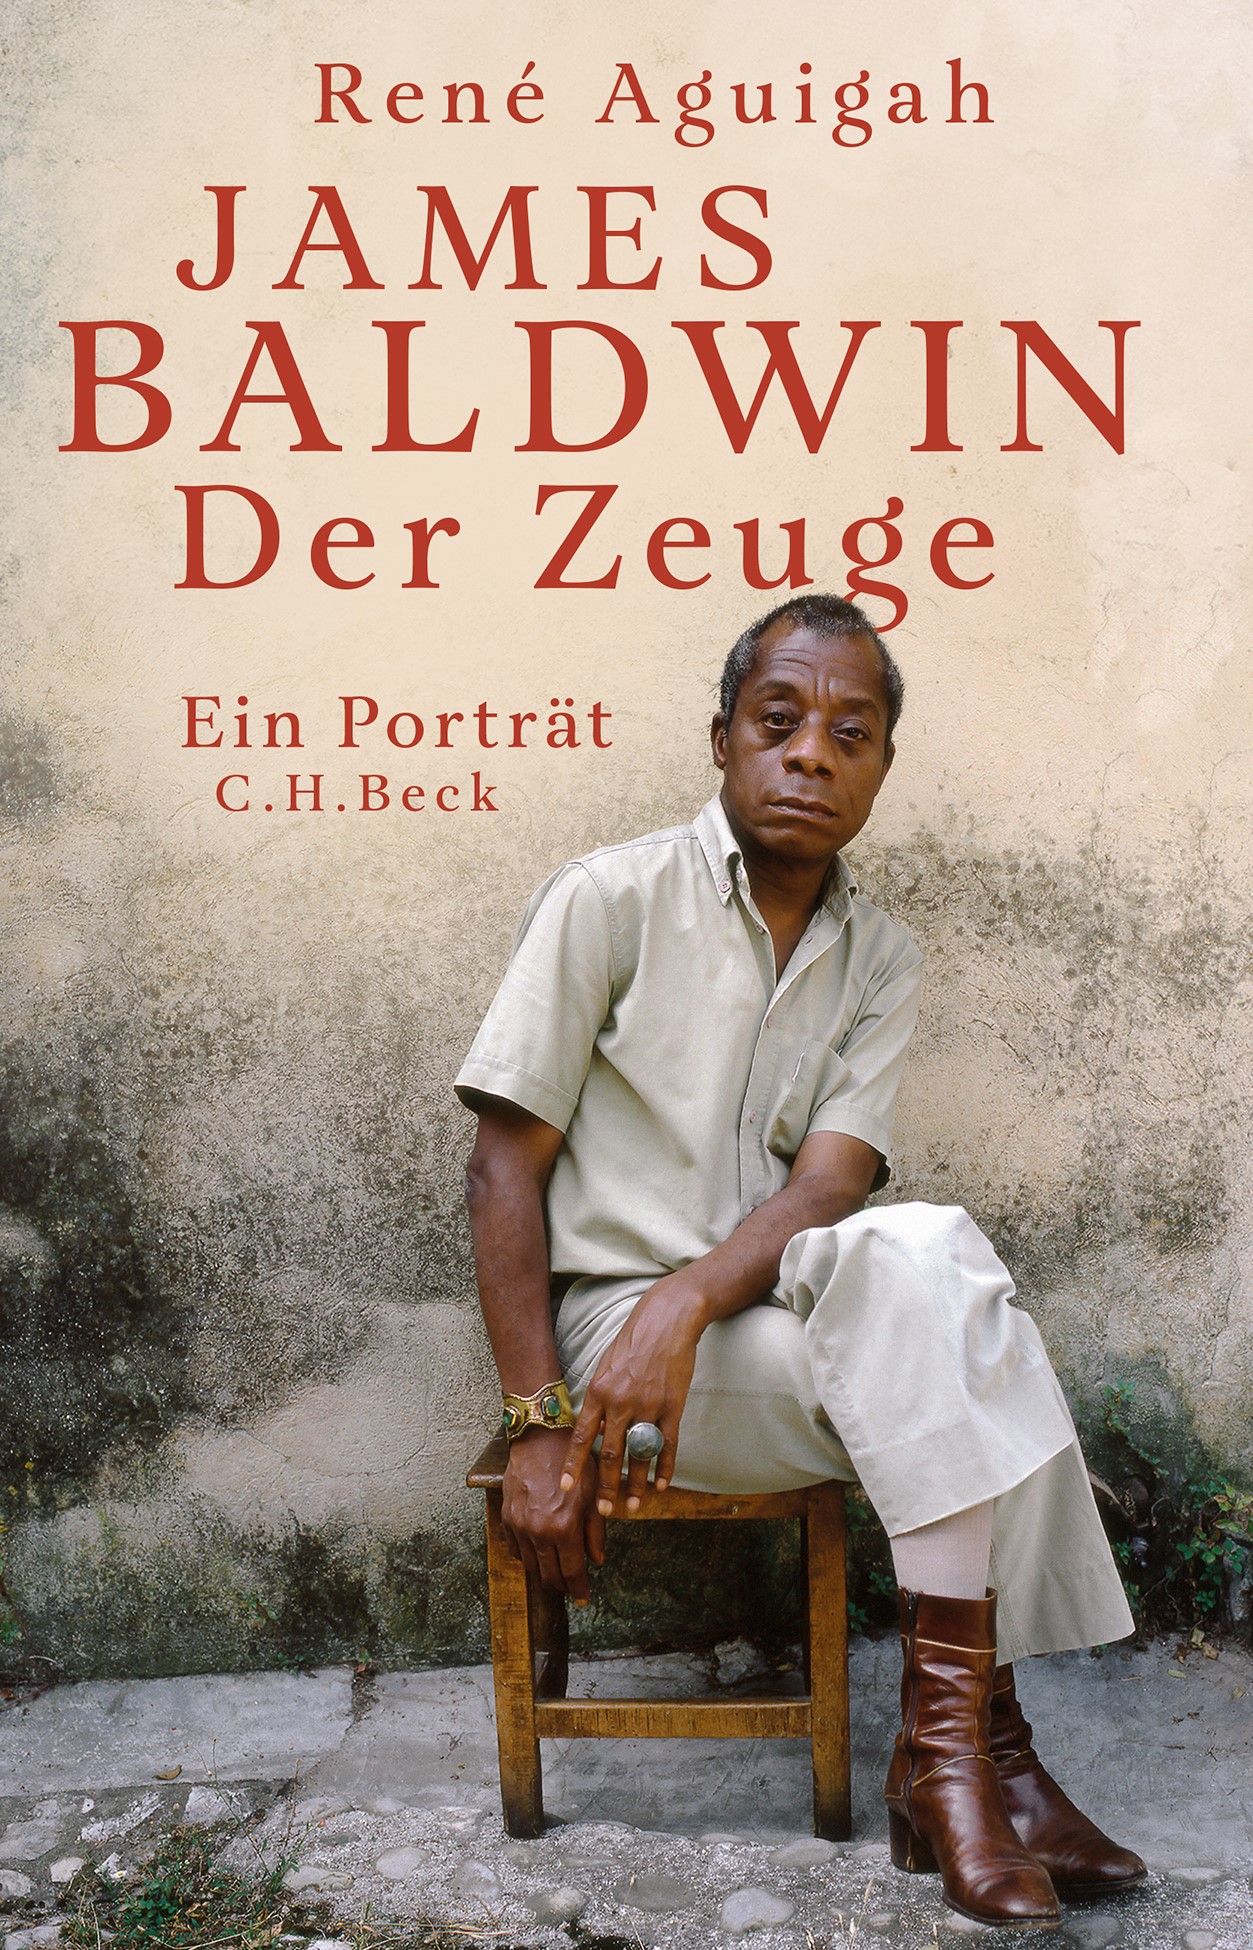 Cover: Aguigah, René, James Baldwin